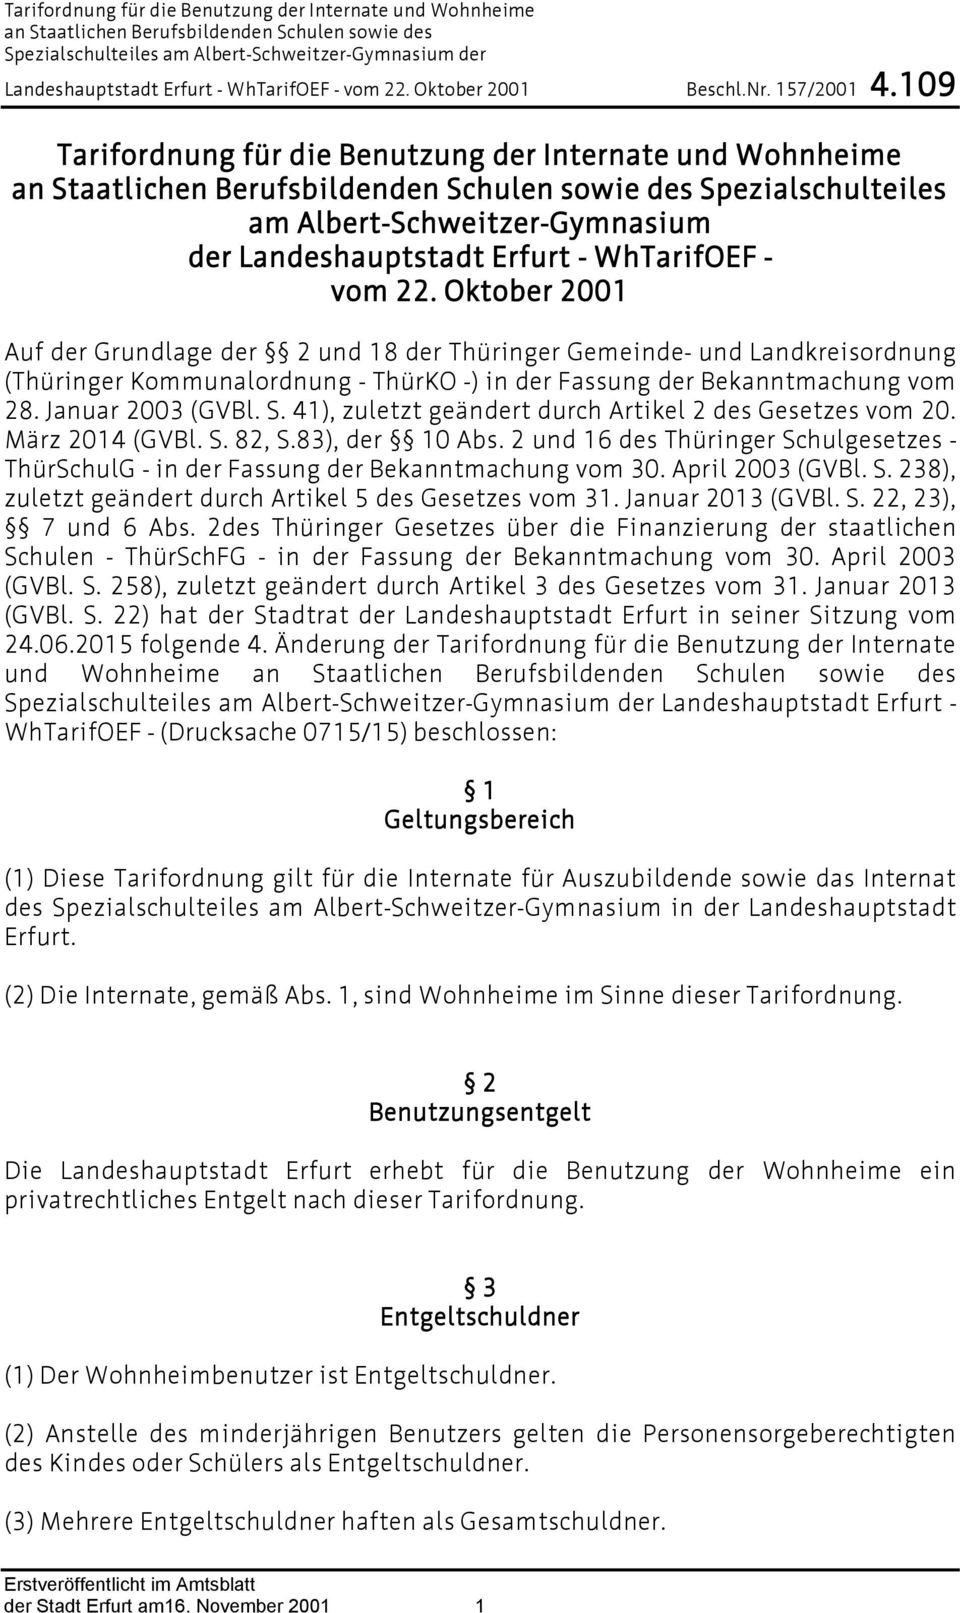 41), zuletzt geändert durch Artikel 2 des Gesetzes vom 20. März 2014 (GVBl. S. 82, S.83), der 10 Abs. 2 und 16 des Thüringer Schulgesetzes - ThürSchulG - in der Fassung der Bekanntmachung vom 30.